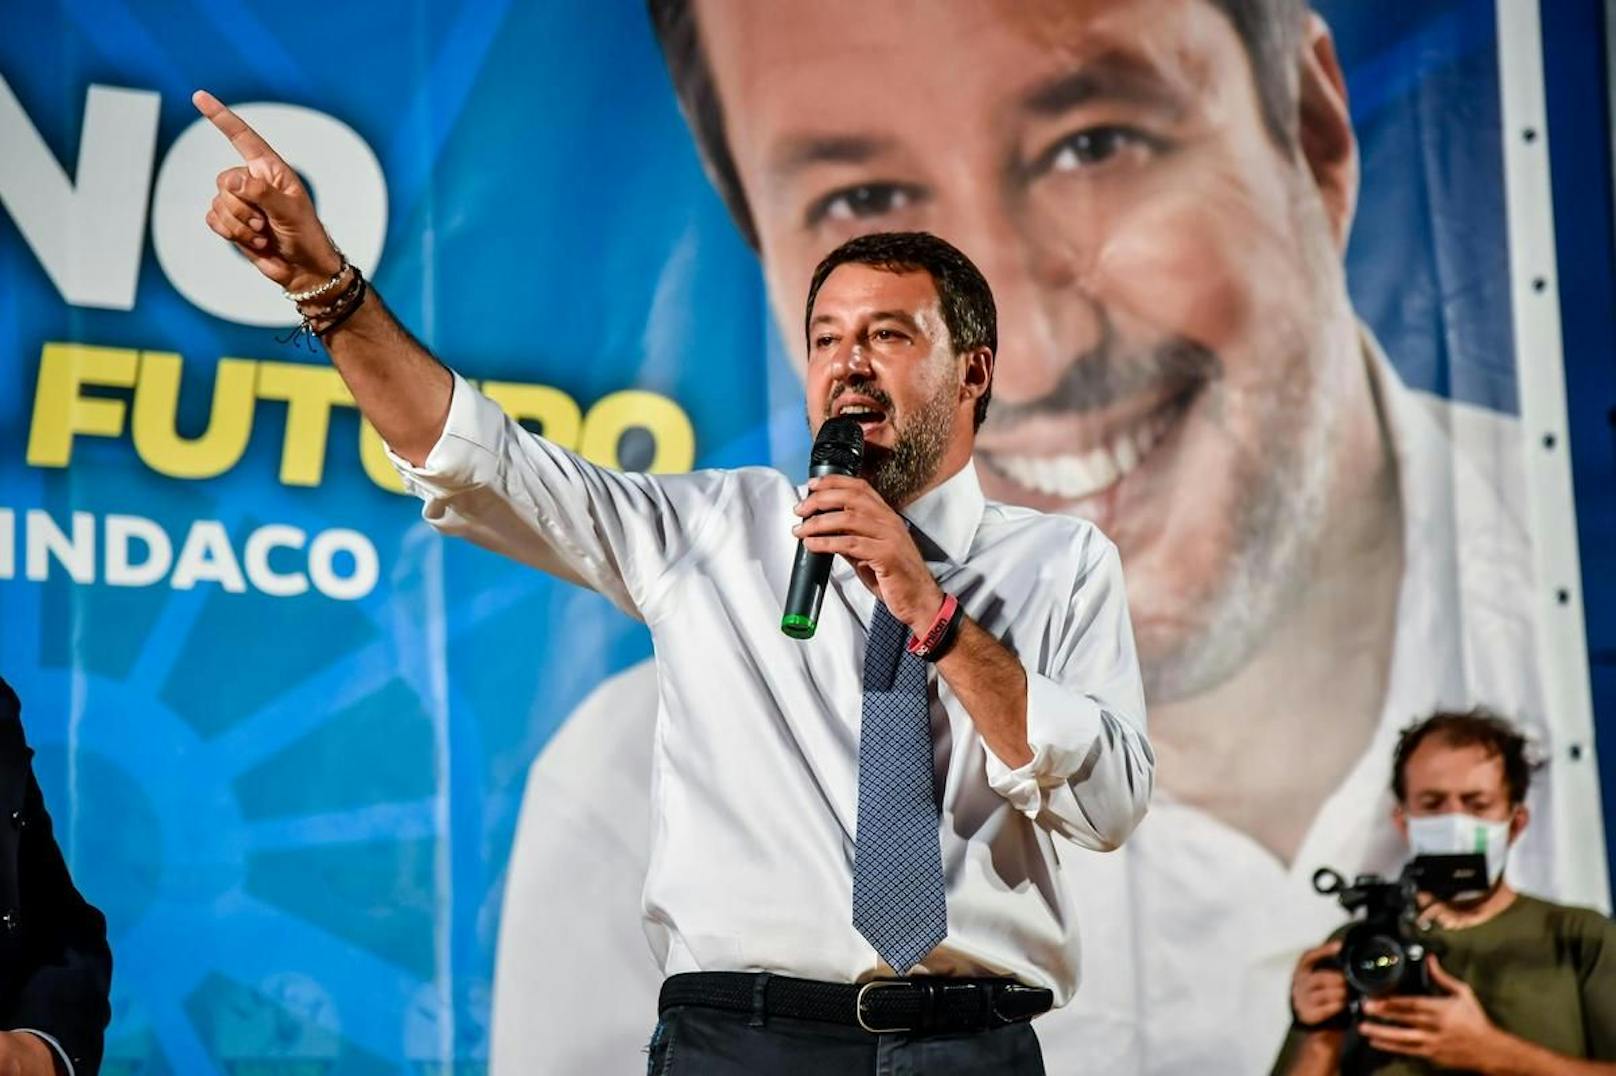 Der Skandal kommt Matteo Salvini sehr ungelegen: Luca Morisi ist der Mann hinter "Die Bestie", einer Software, die einen konstanten Strom von Inhalten auf den Social-Media-Kanälen des Lega-Politikers produziert und deren Hauptaufgabe es ist, Feindseligkeiten gegenüber Einwanderern zu schüren.